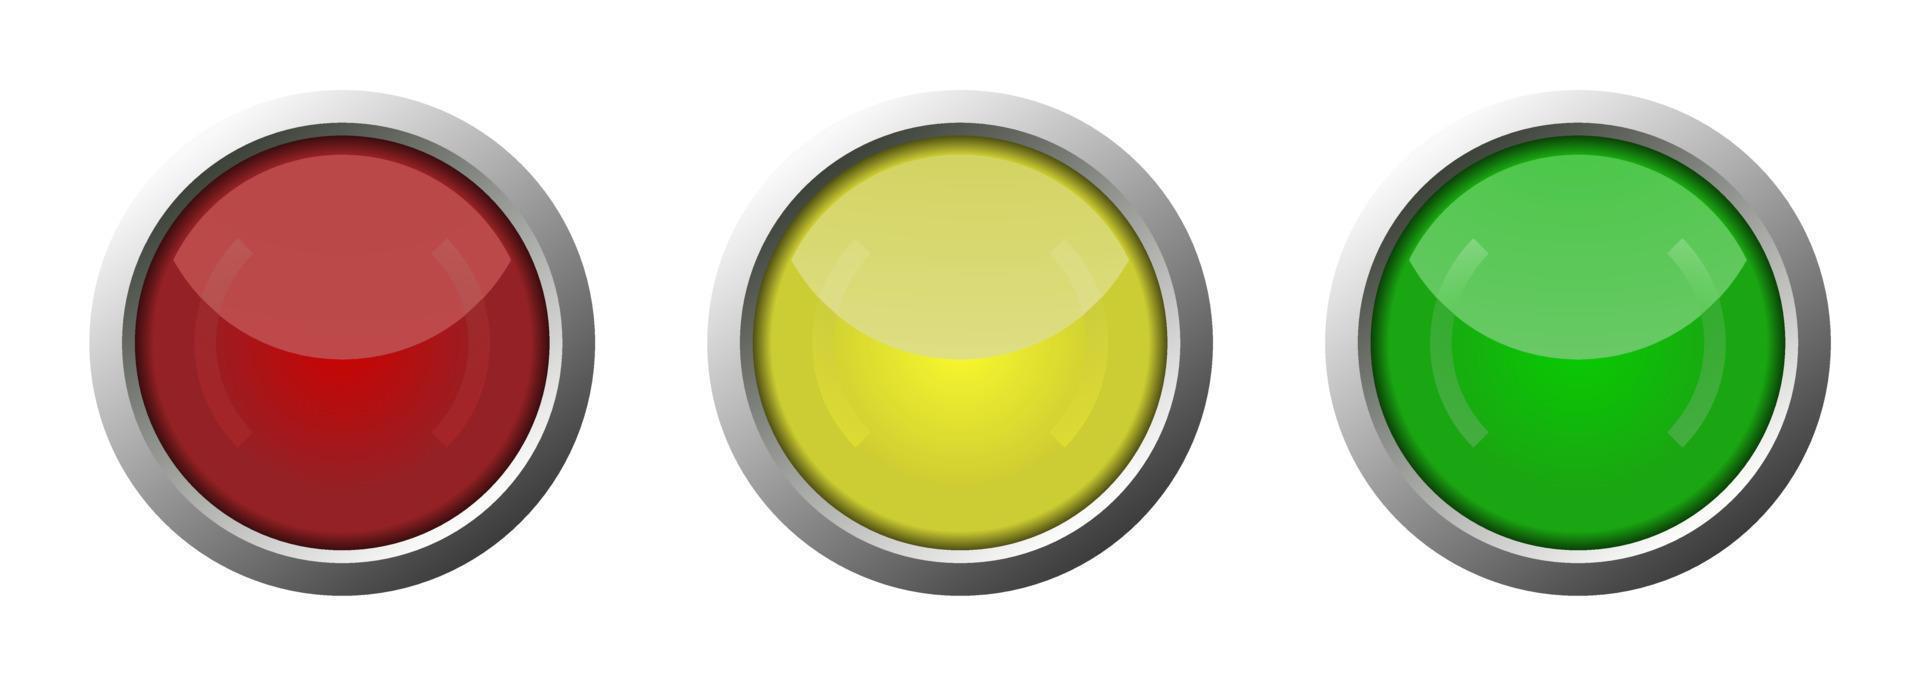 vektor start- och stoppknapp, röd knapp, gul knapp, grön knapp